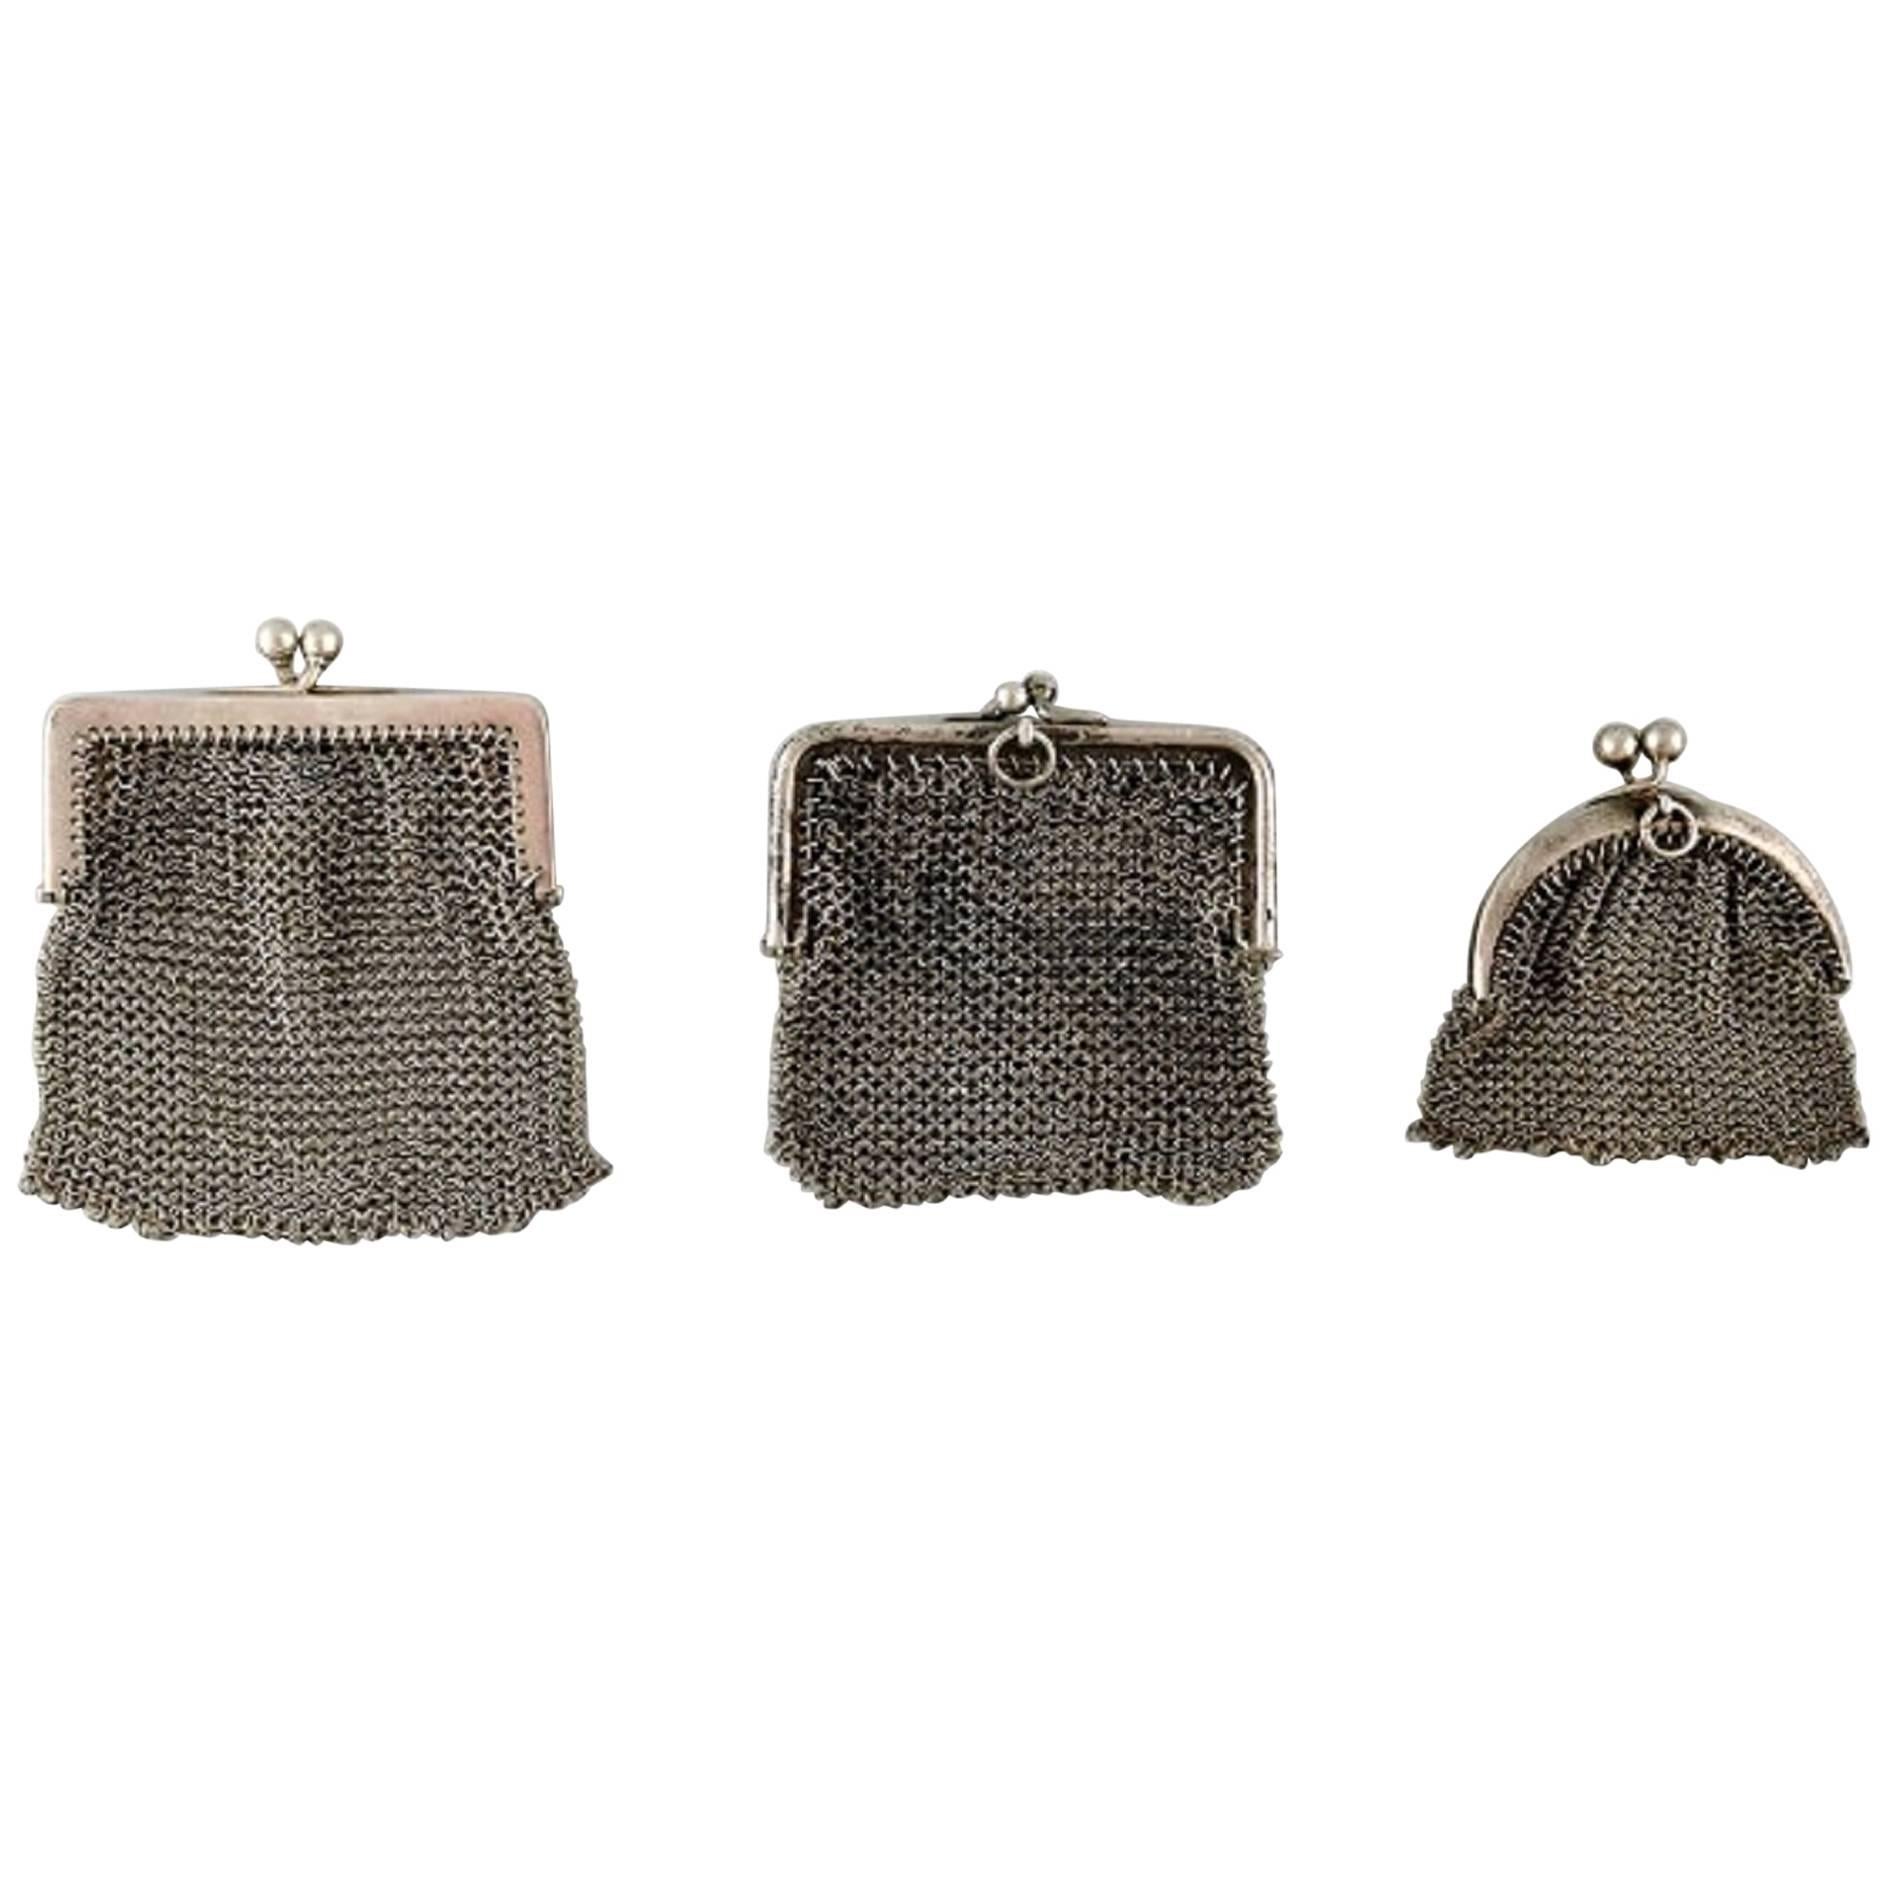 Drei kleine silberne Damen Geldbörsen, um 1900, gestrickte Tasche im Angebot